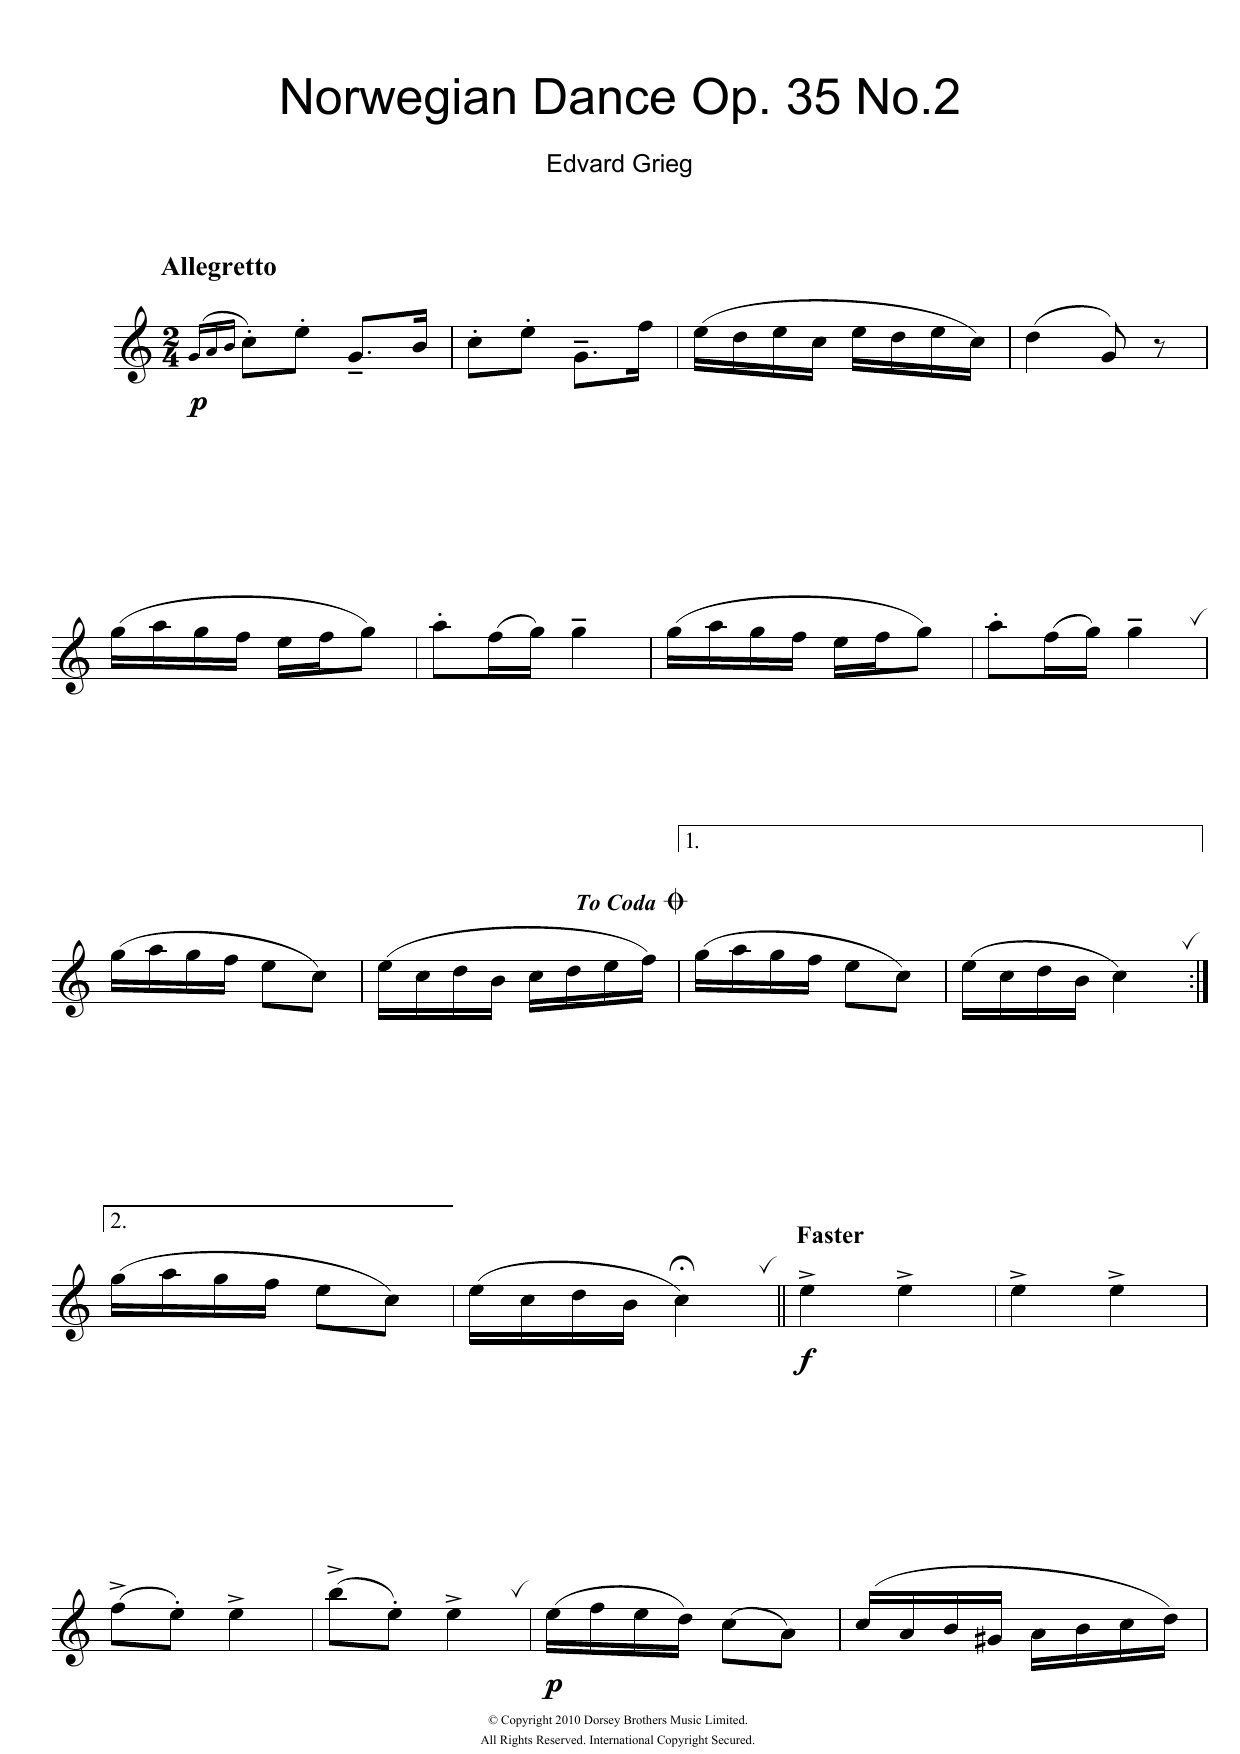 Download Edvard Grieg Norwegian Dance No. 2 Op. 35 Sheet Music